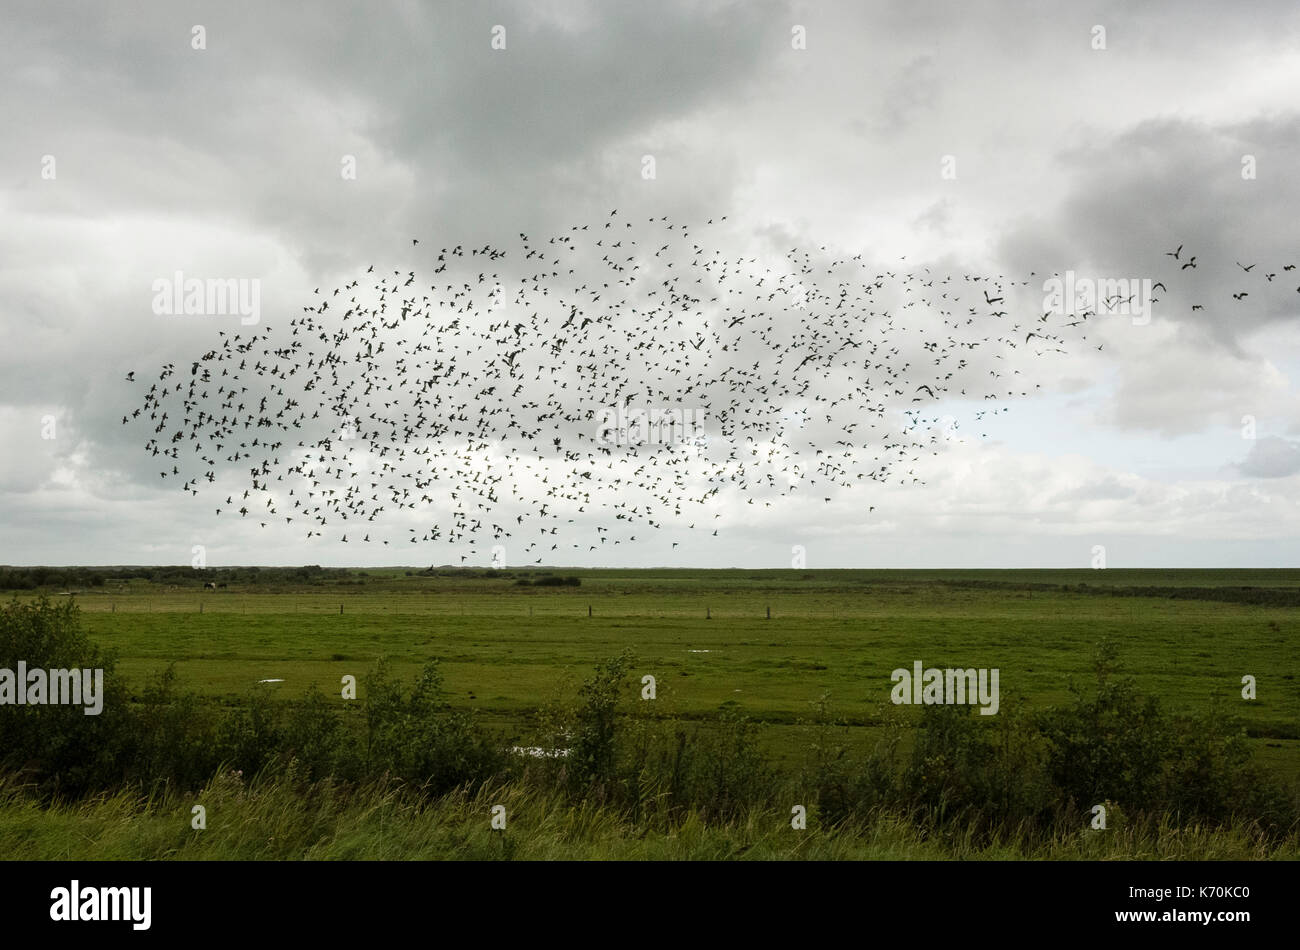 Hafenstraße, Langeoog. Deutschland. Germania. La migrazione di storni volare in formazione oltre i pascoli. Si tratta di un luminoso Nuvoloso Giorno con drammatica nuvole formando uno sfondo dietro gli uccelli. Foto Stock